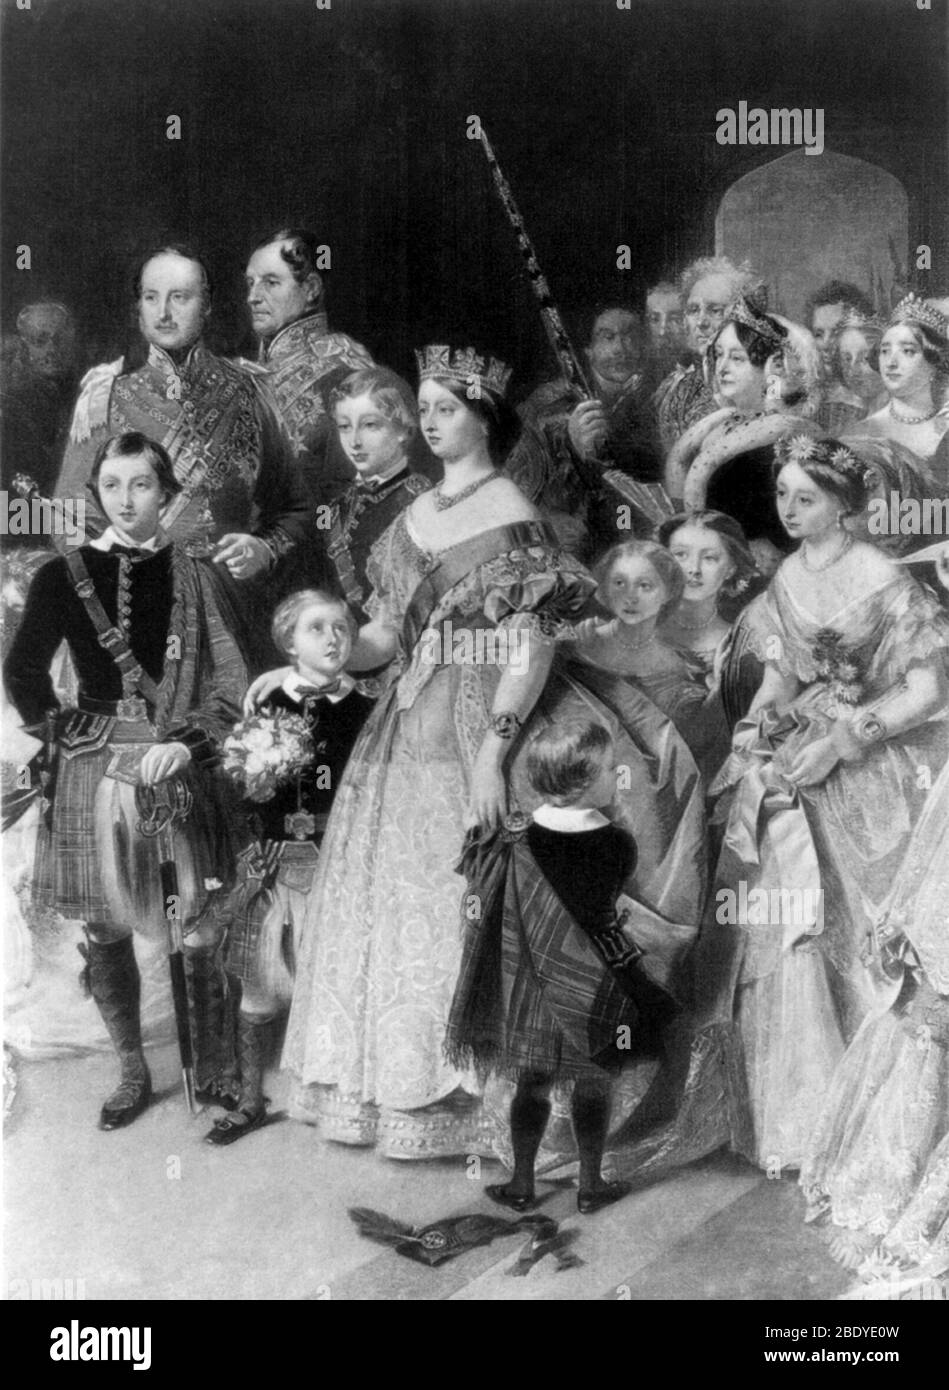 Reine Victoria avec membres de la famille royale, 1897 Banque D'Images